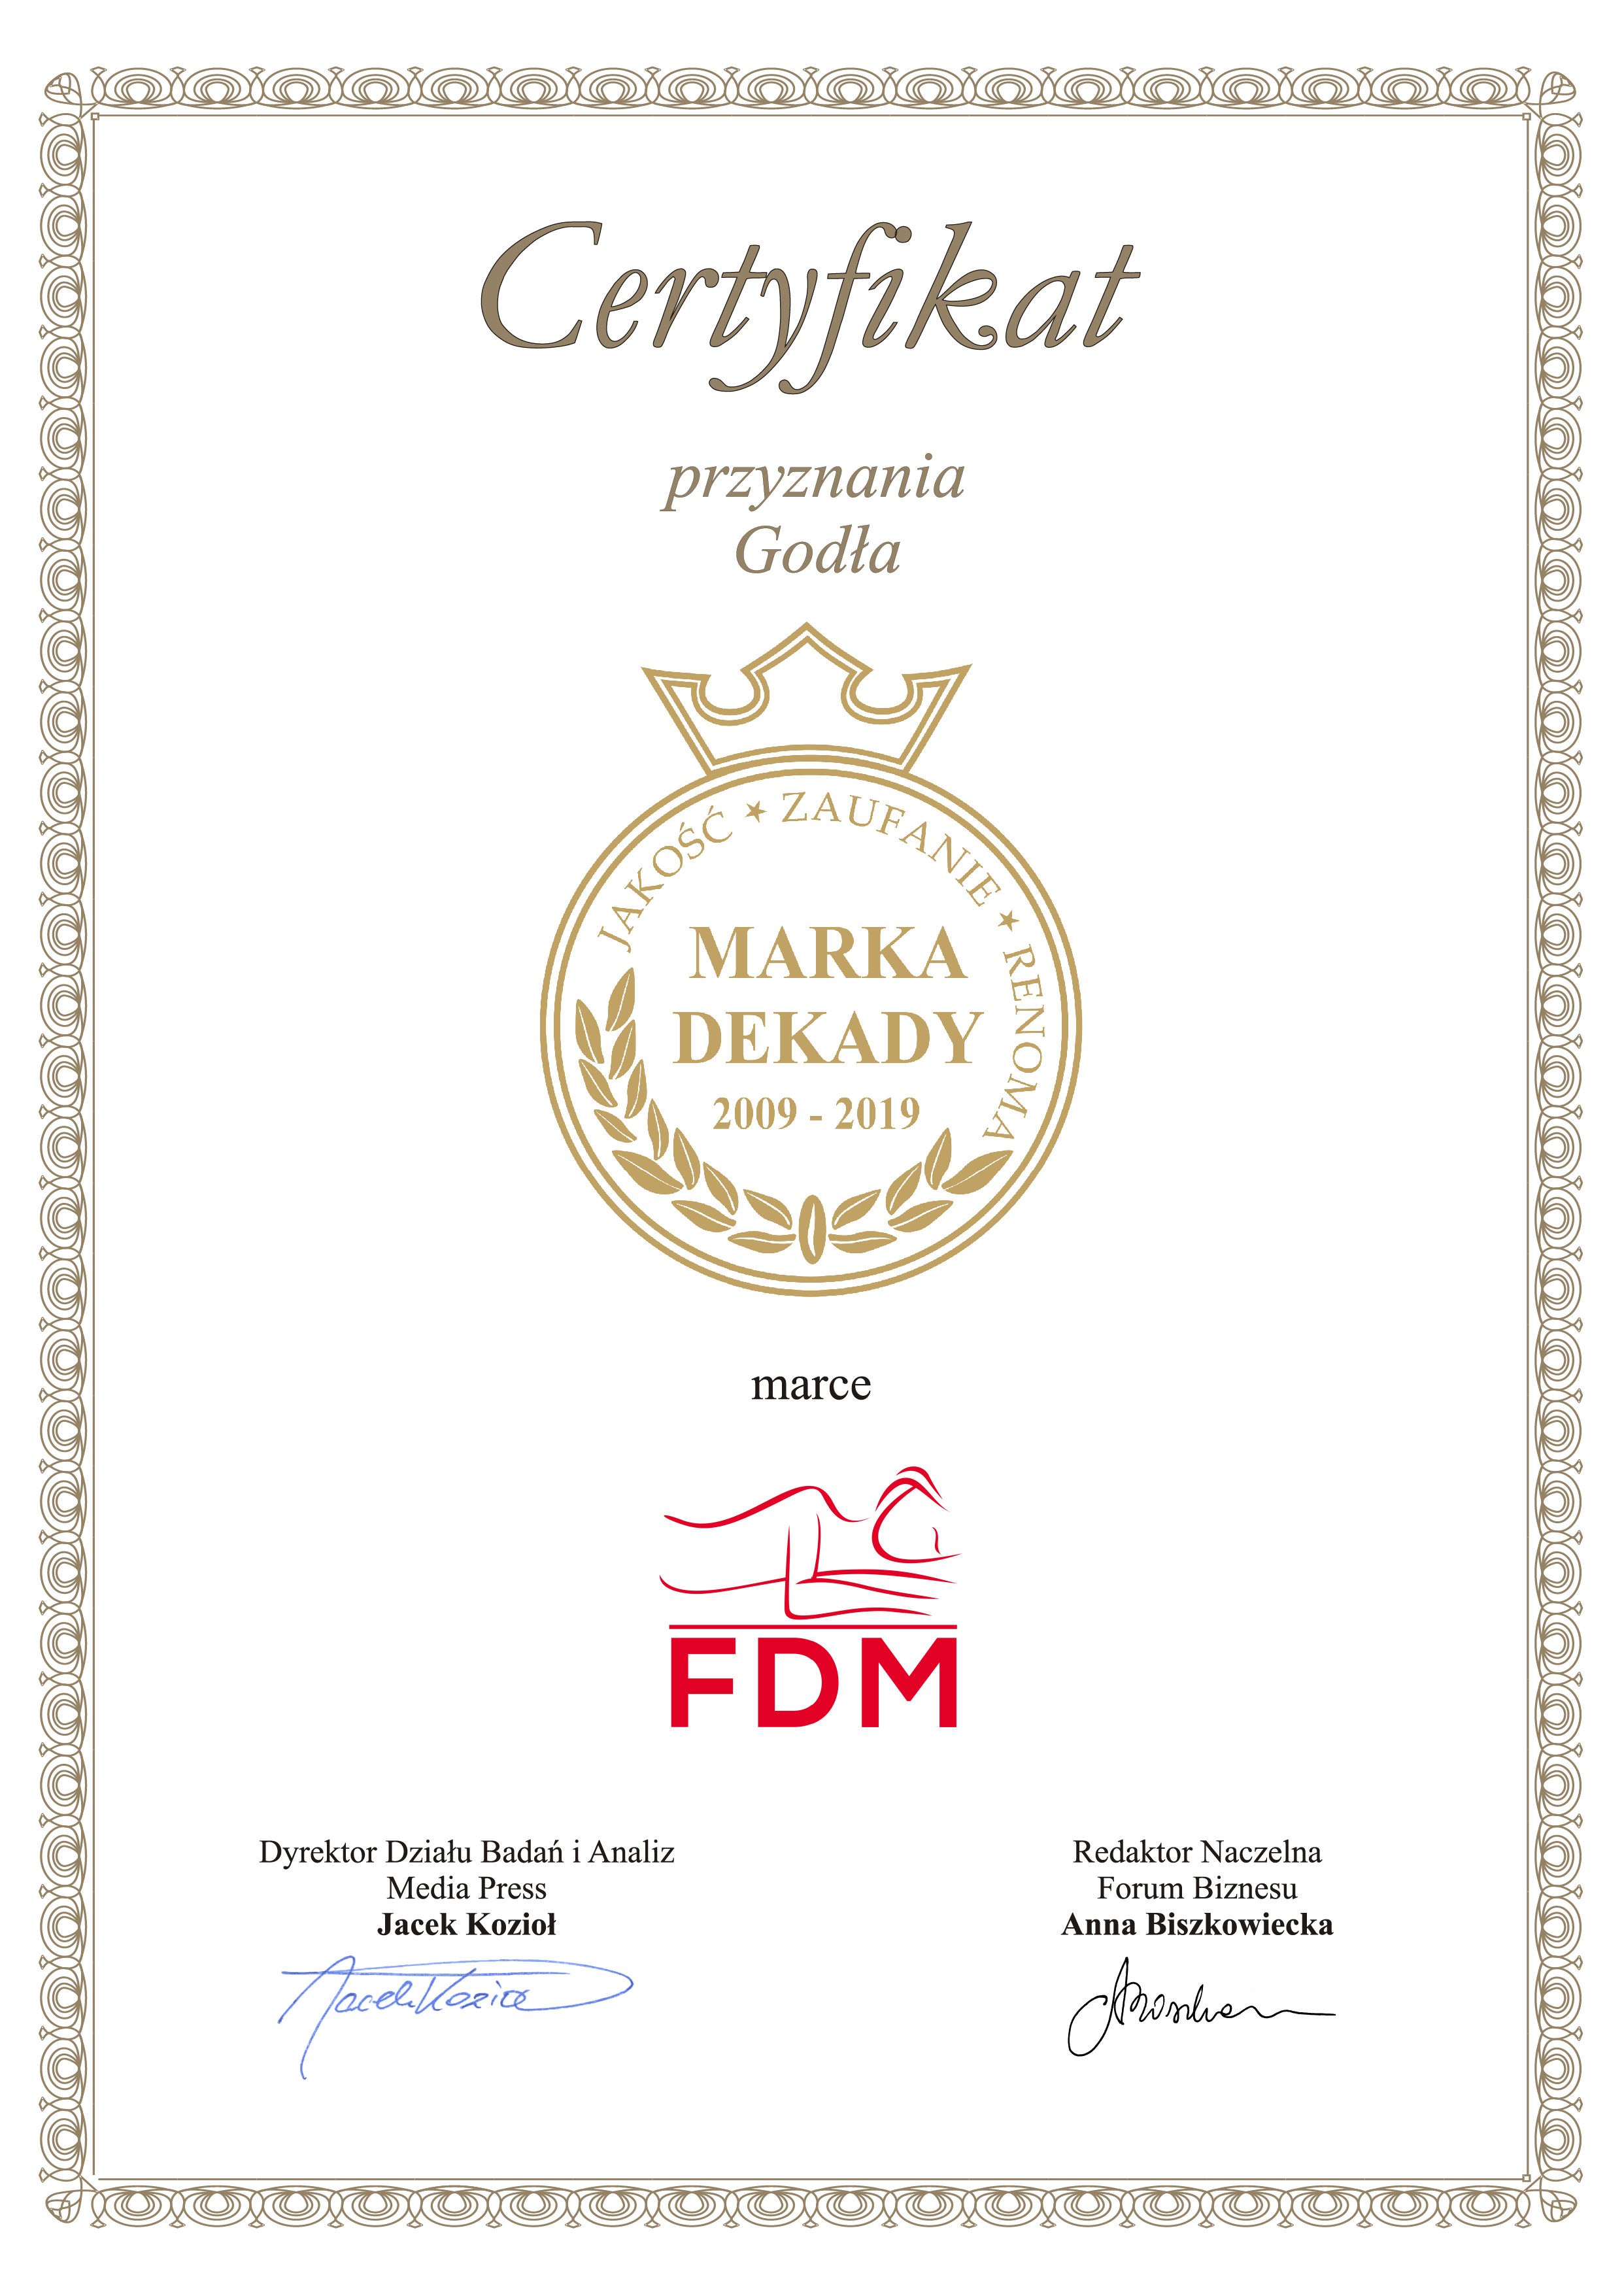 Certyfikat Marka Dekady 2009 -2019 dla FDM